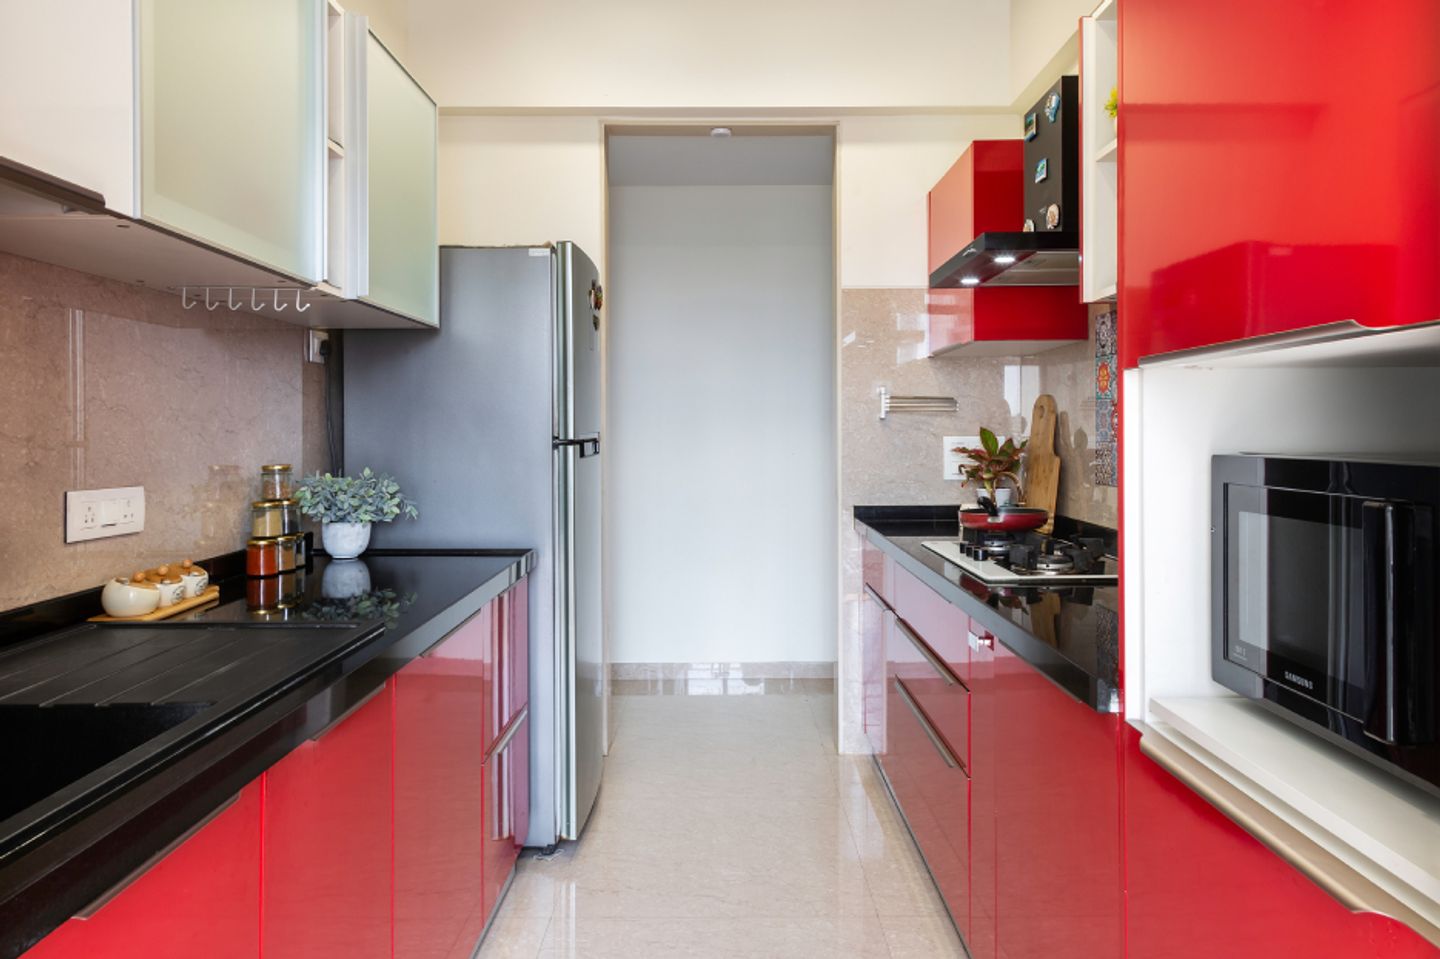 Modern Parallel Kitchen Design With Colourful Backsplash Tiles